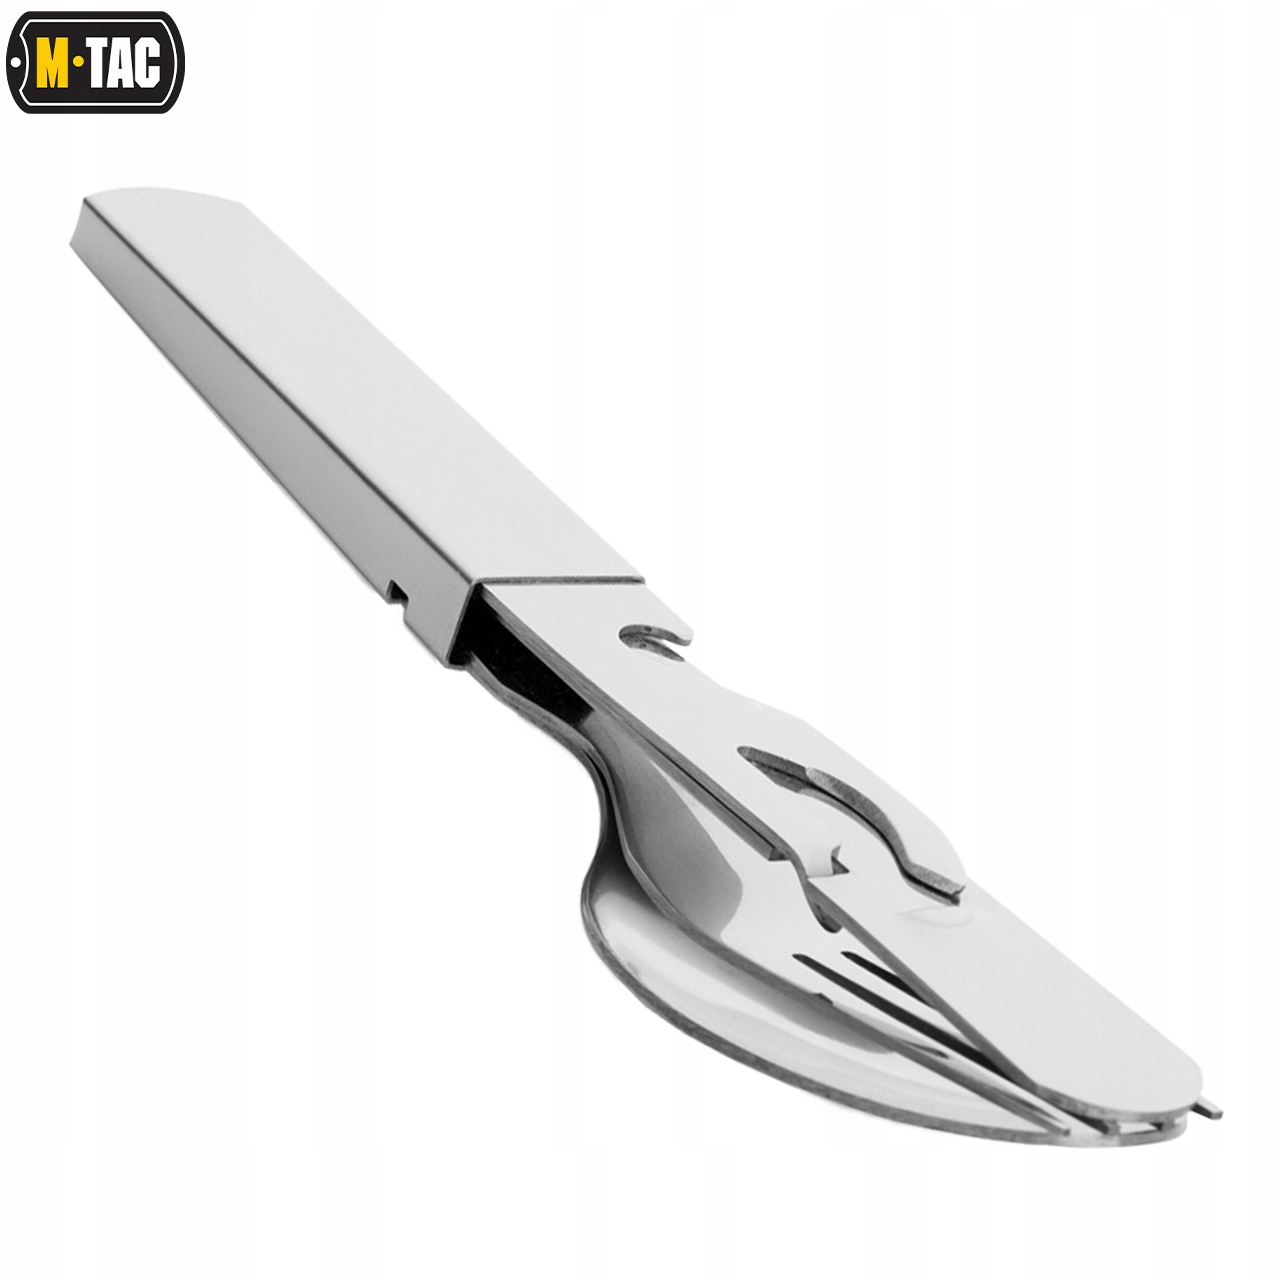 NIEZBĘDNIK TURYSTYCZNY LARGE STALOWY M-TAC ZESTAW sztućce nóż łyżka widelec Kod producenta HWCJ001L